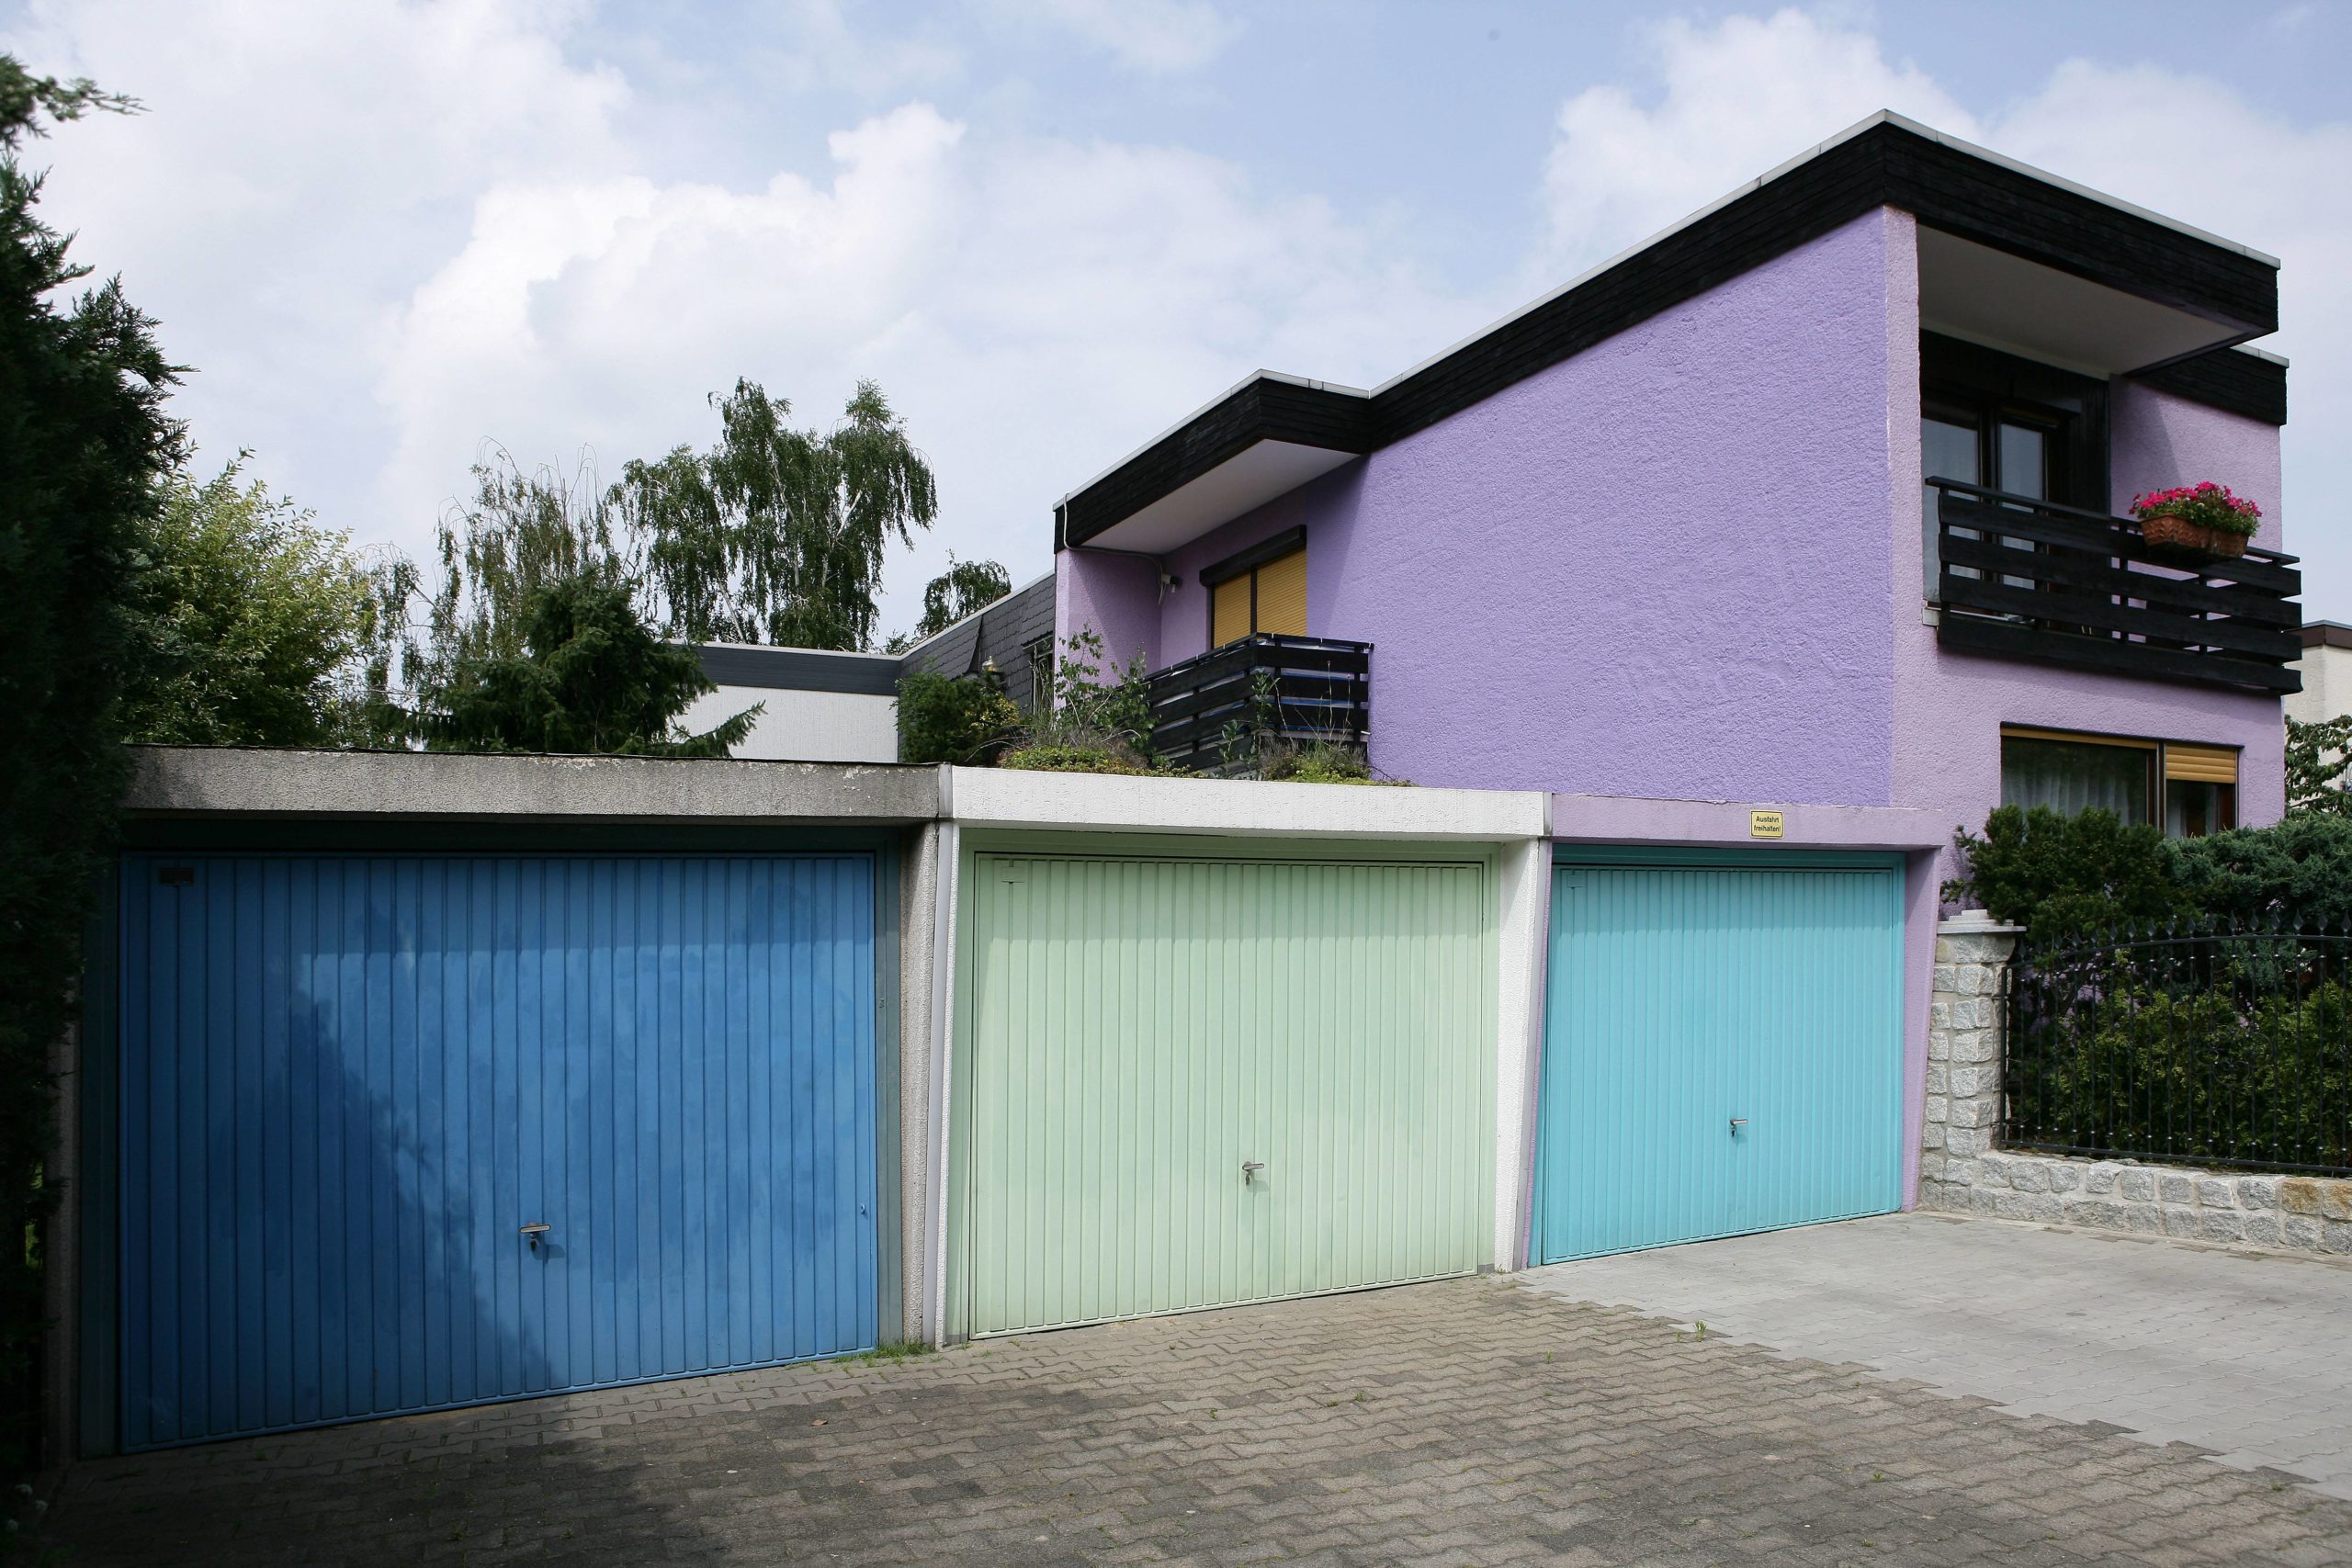 Lila Haus mit blauen Garagen in Reinickendorf. Foto: Imago/Wrongside Pictures